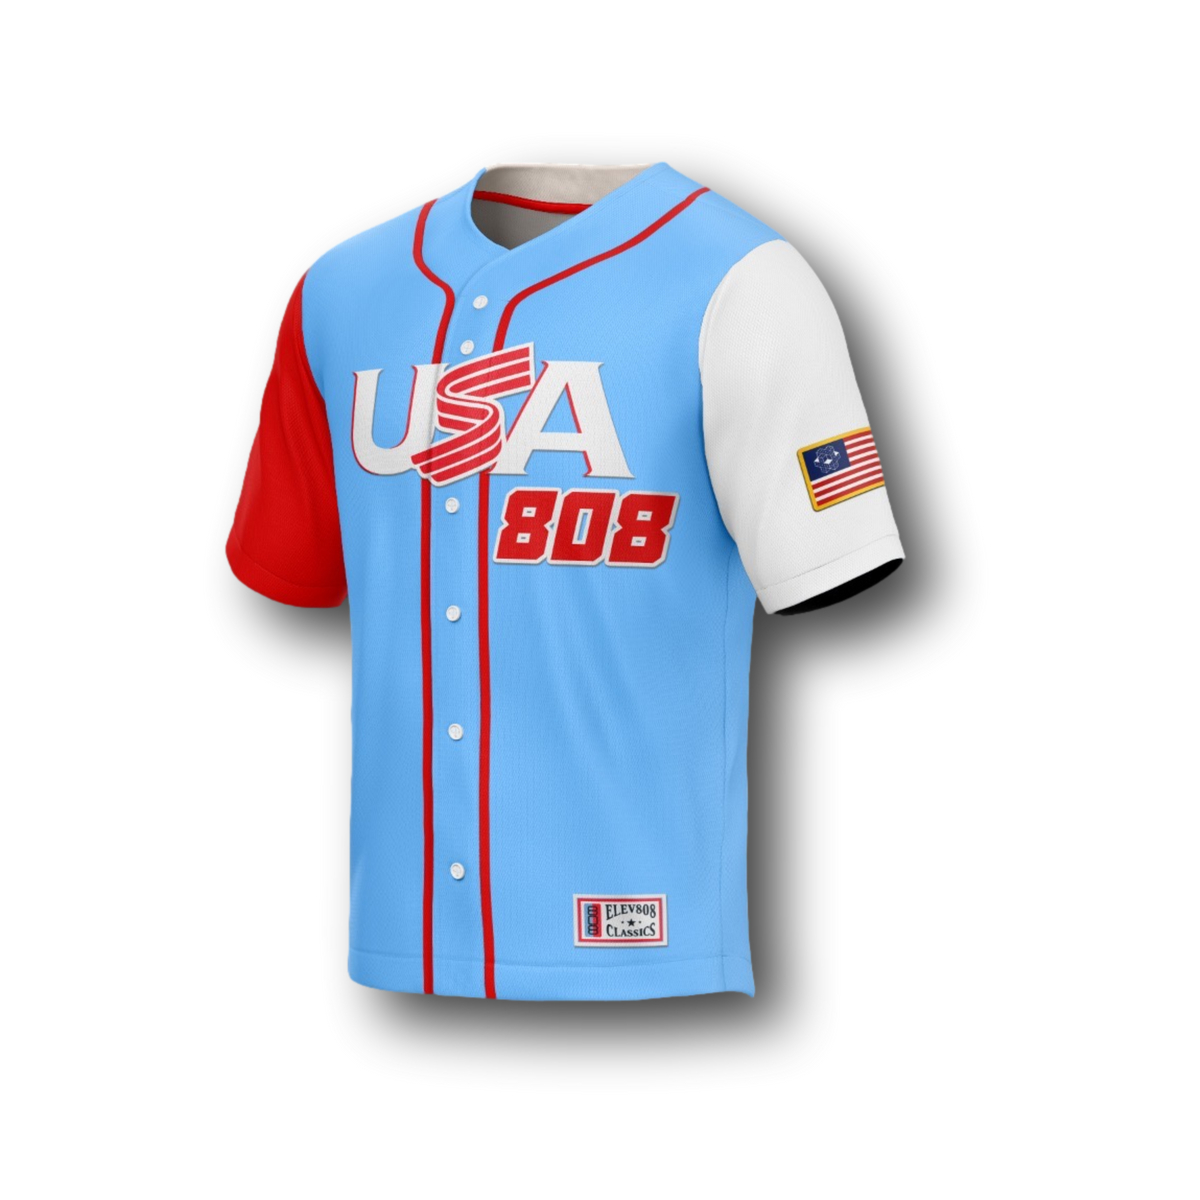 USA 808 Baseball Jersey - LE75